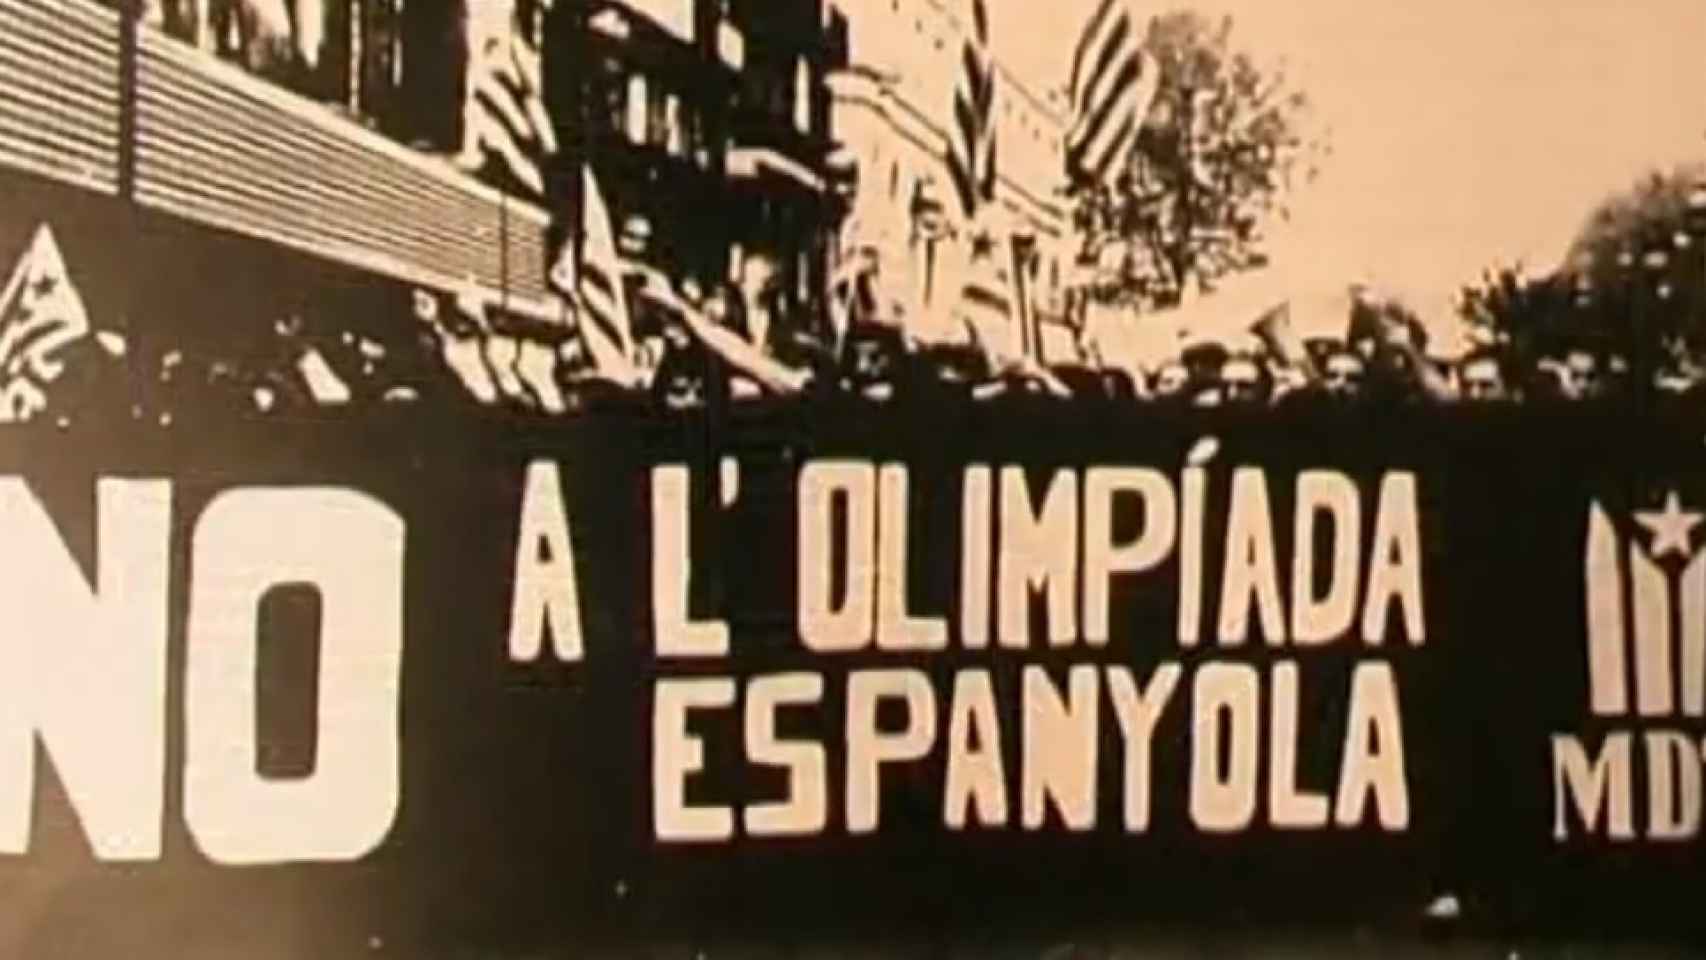 El independentismo radical estaba en contra de los Juegos Olímpicos de Barcelona